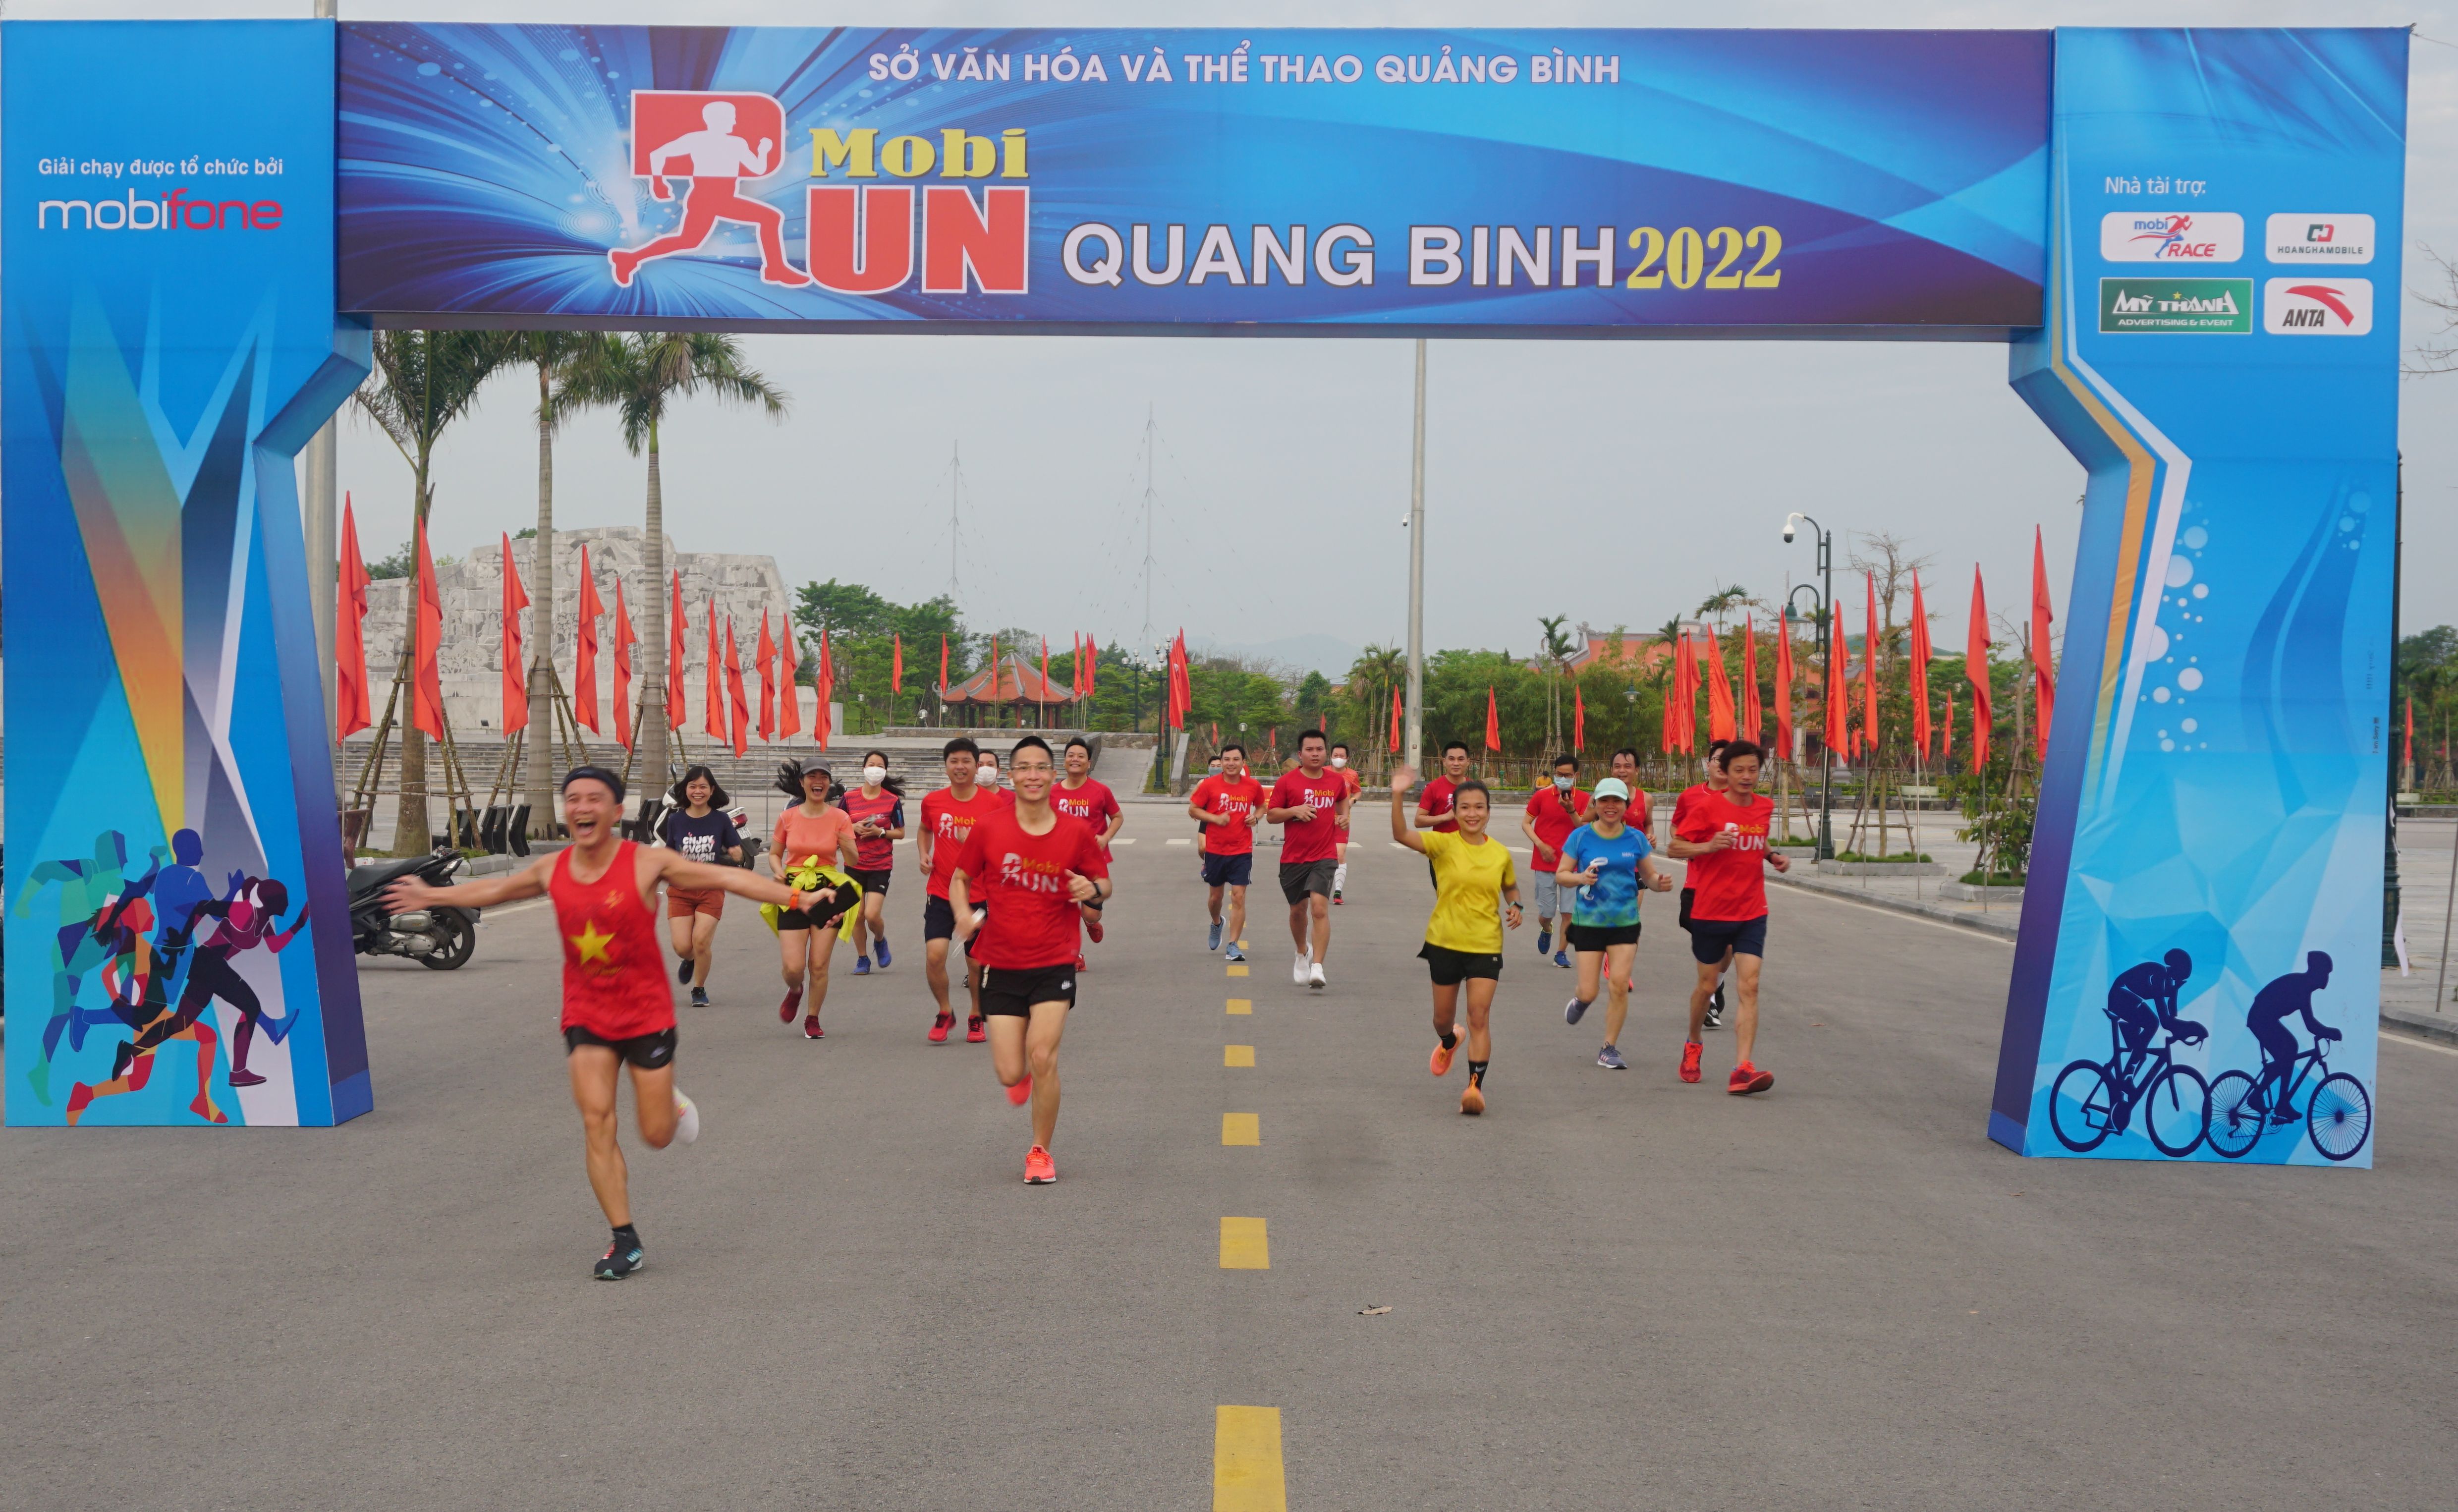 Tổ chức giải thể thao online "MobiRun Quang Binh" lần thứ III năm 2022